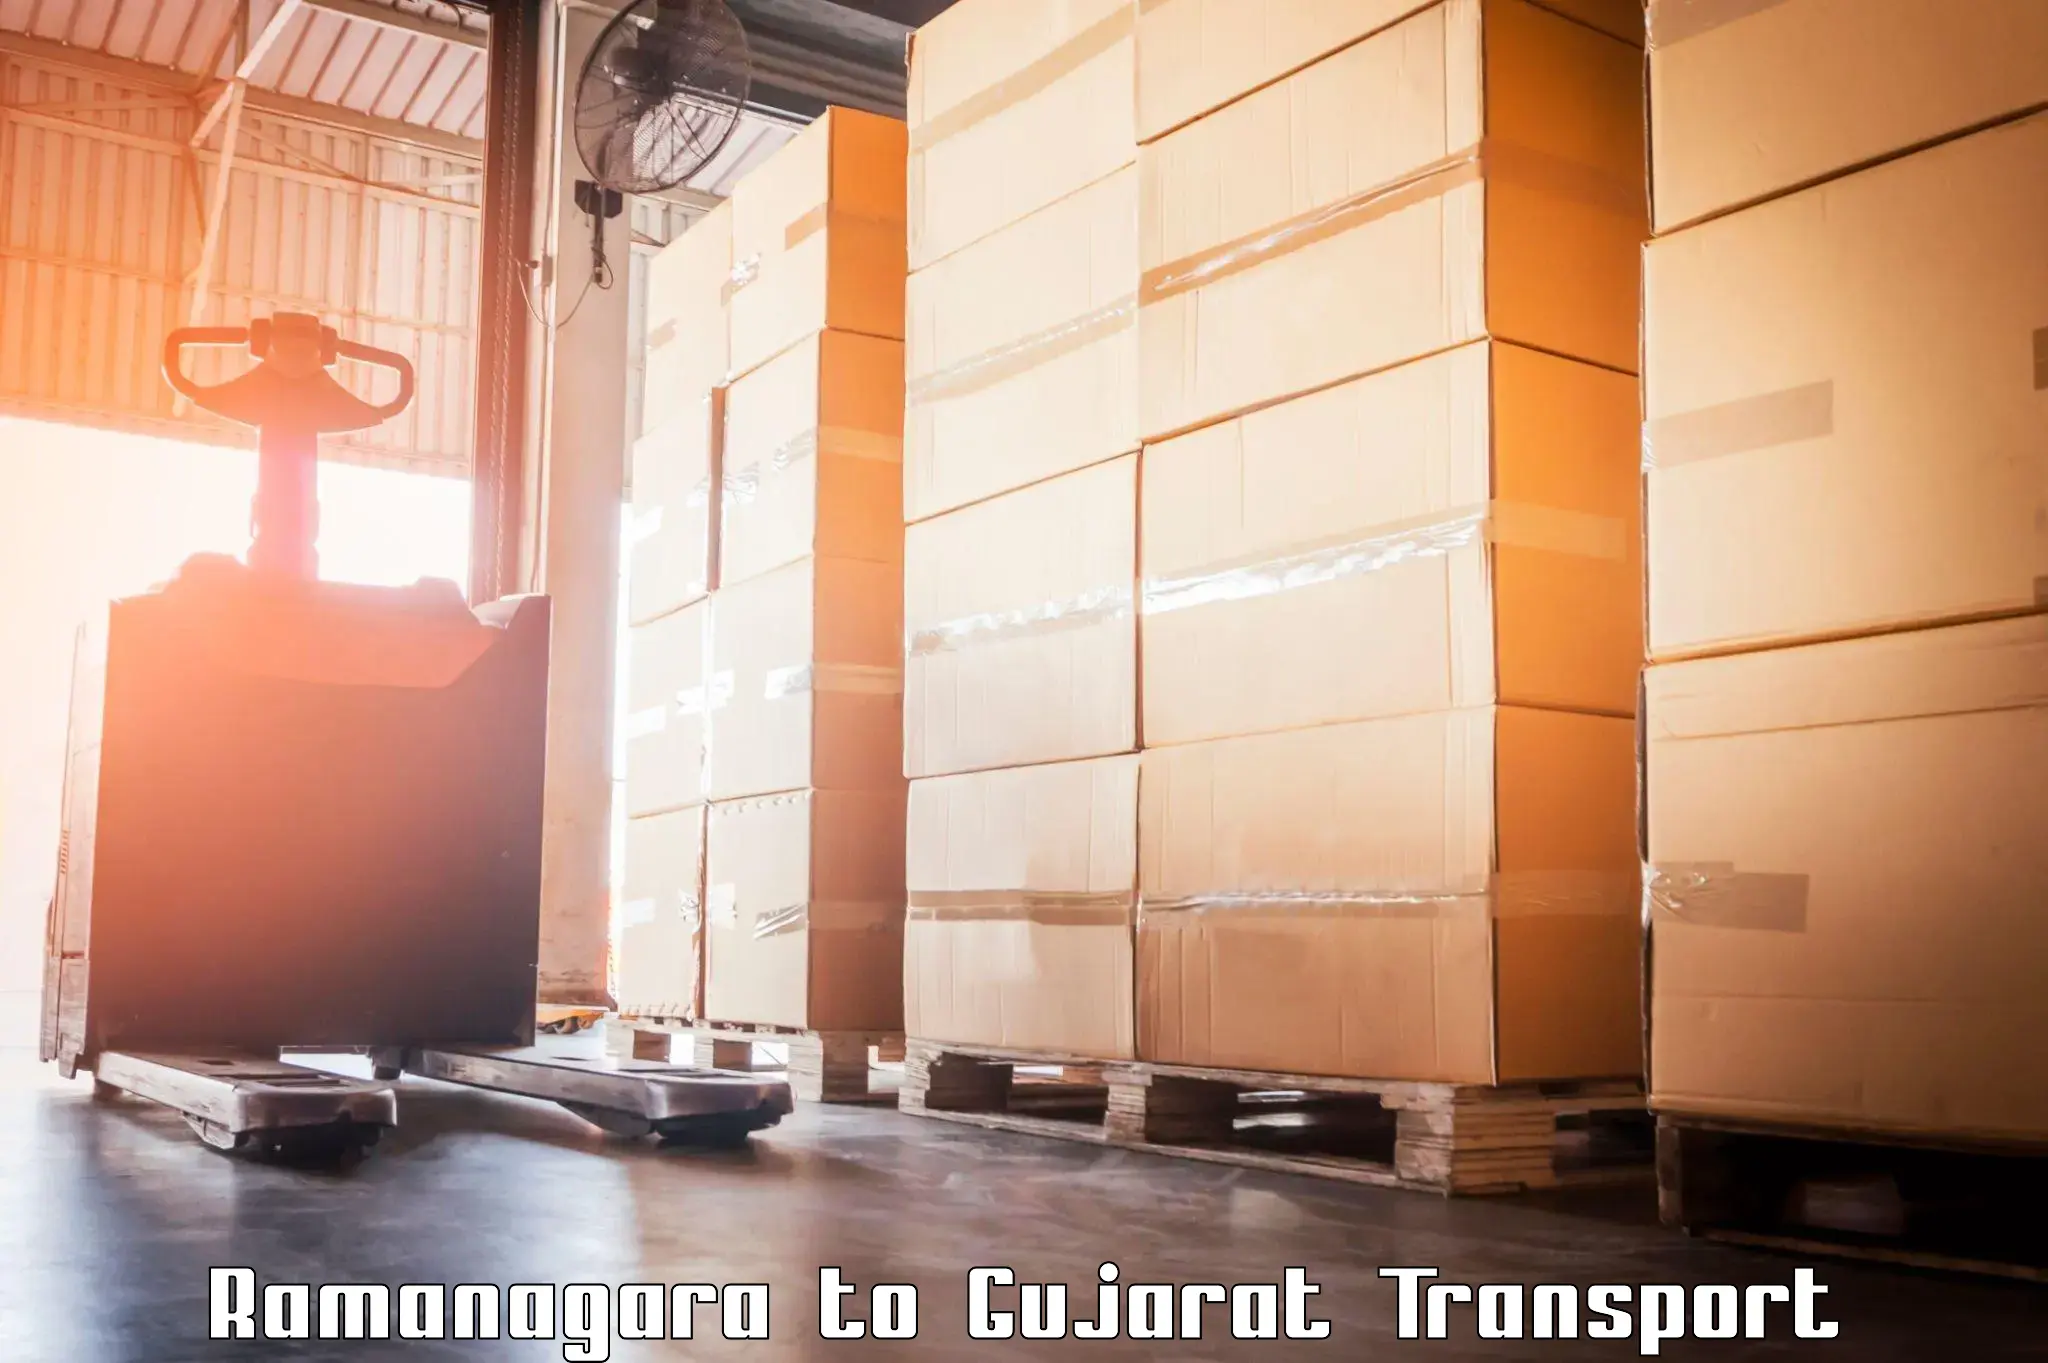 Interstate goods transport Ramanagara to Matar